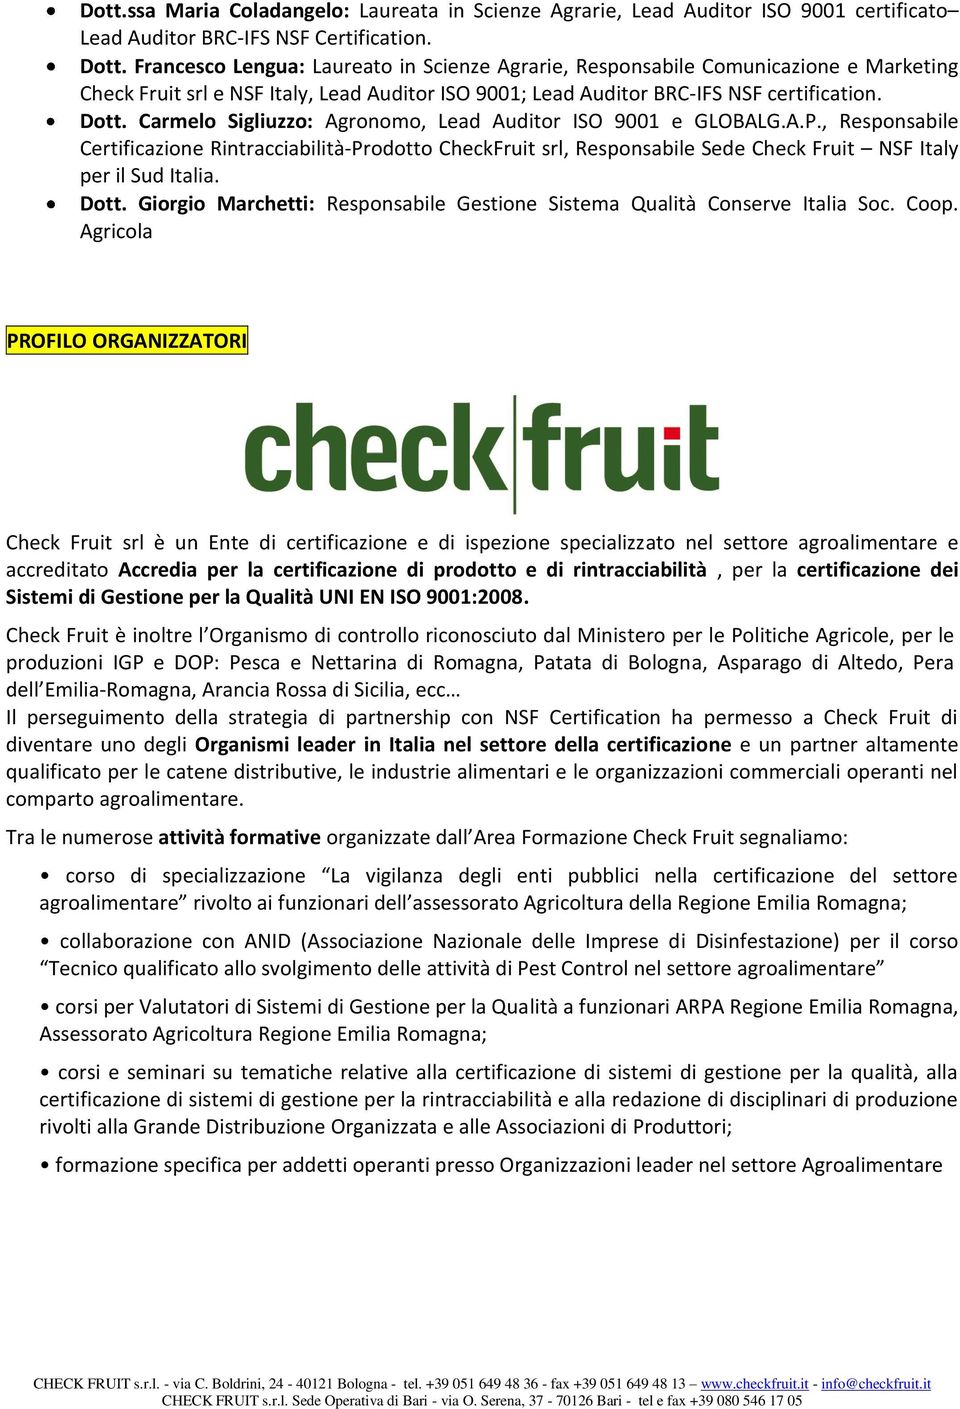 Carmelo Sigliuzzo: Agronomo, Lead Auditor ISO 9001 e GLOBALG.A.P., Responsabile Certificazione Rintracciabilità-Prodotto CheckFruit srl, Responsabile Sede Check Fruit NSF Italy per il Sud Italia.